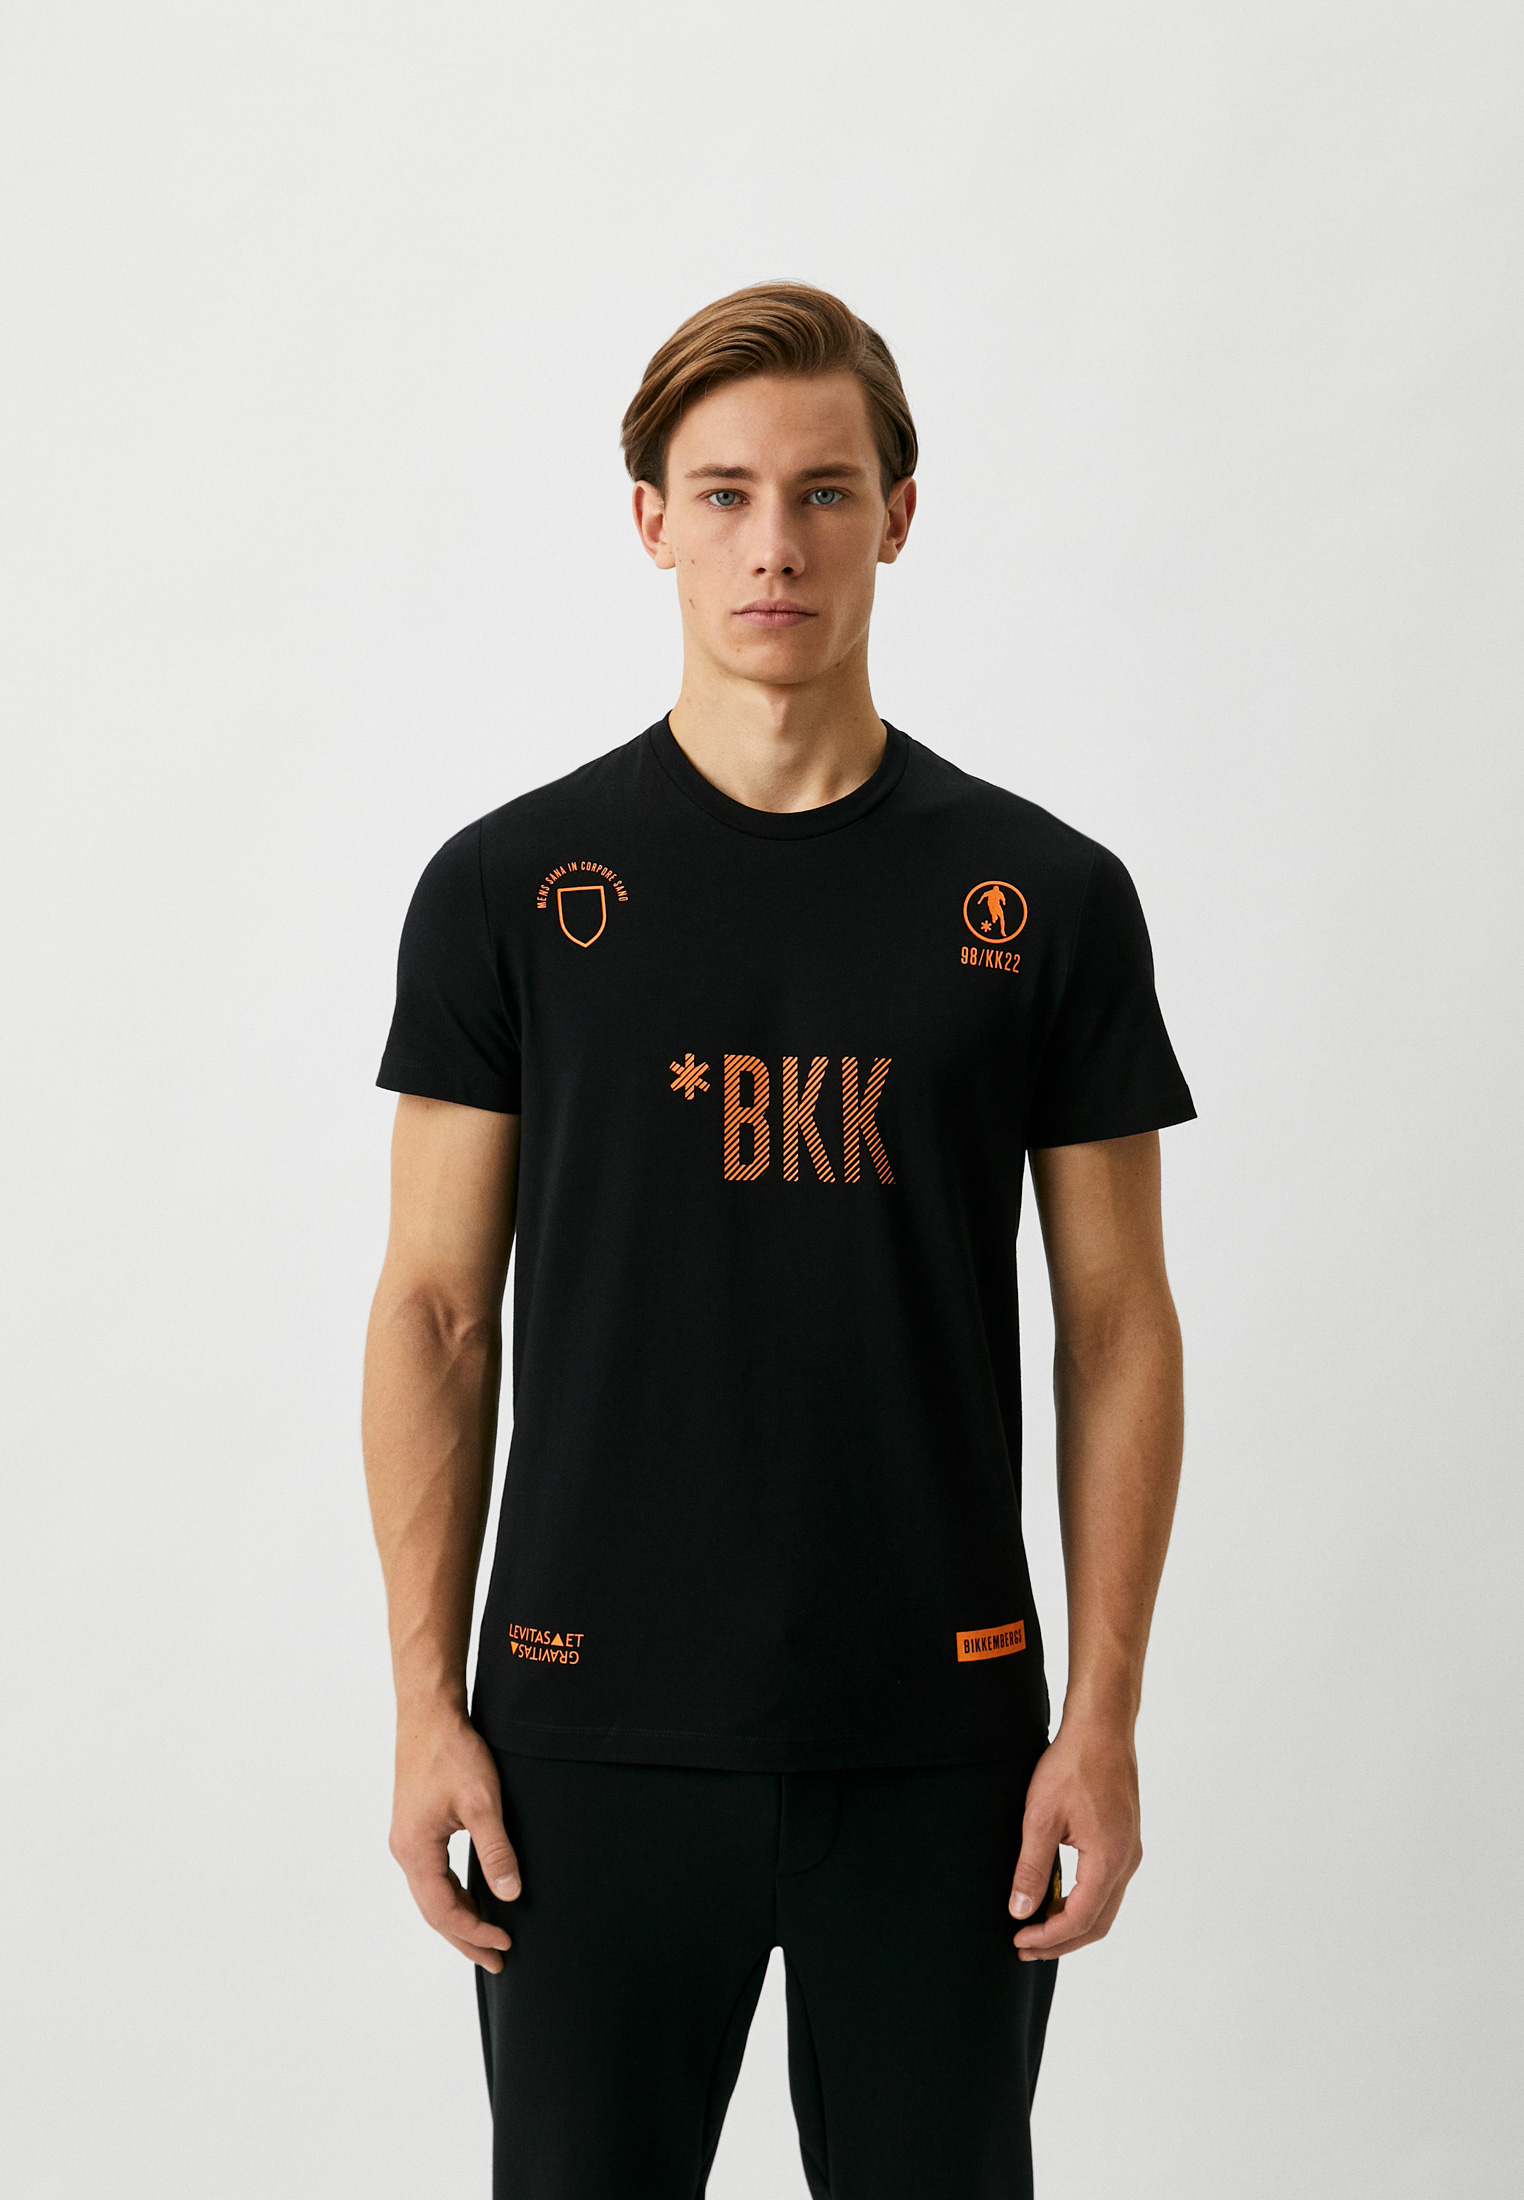 Мужская футболка Bikkembergs (Биккембергс) C 4 101 2F E 1811